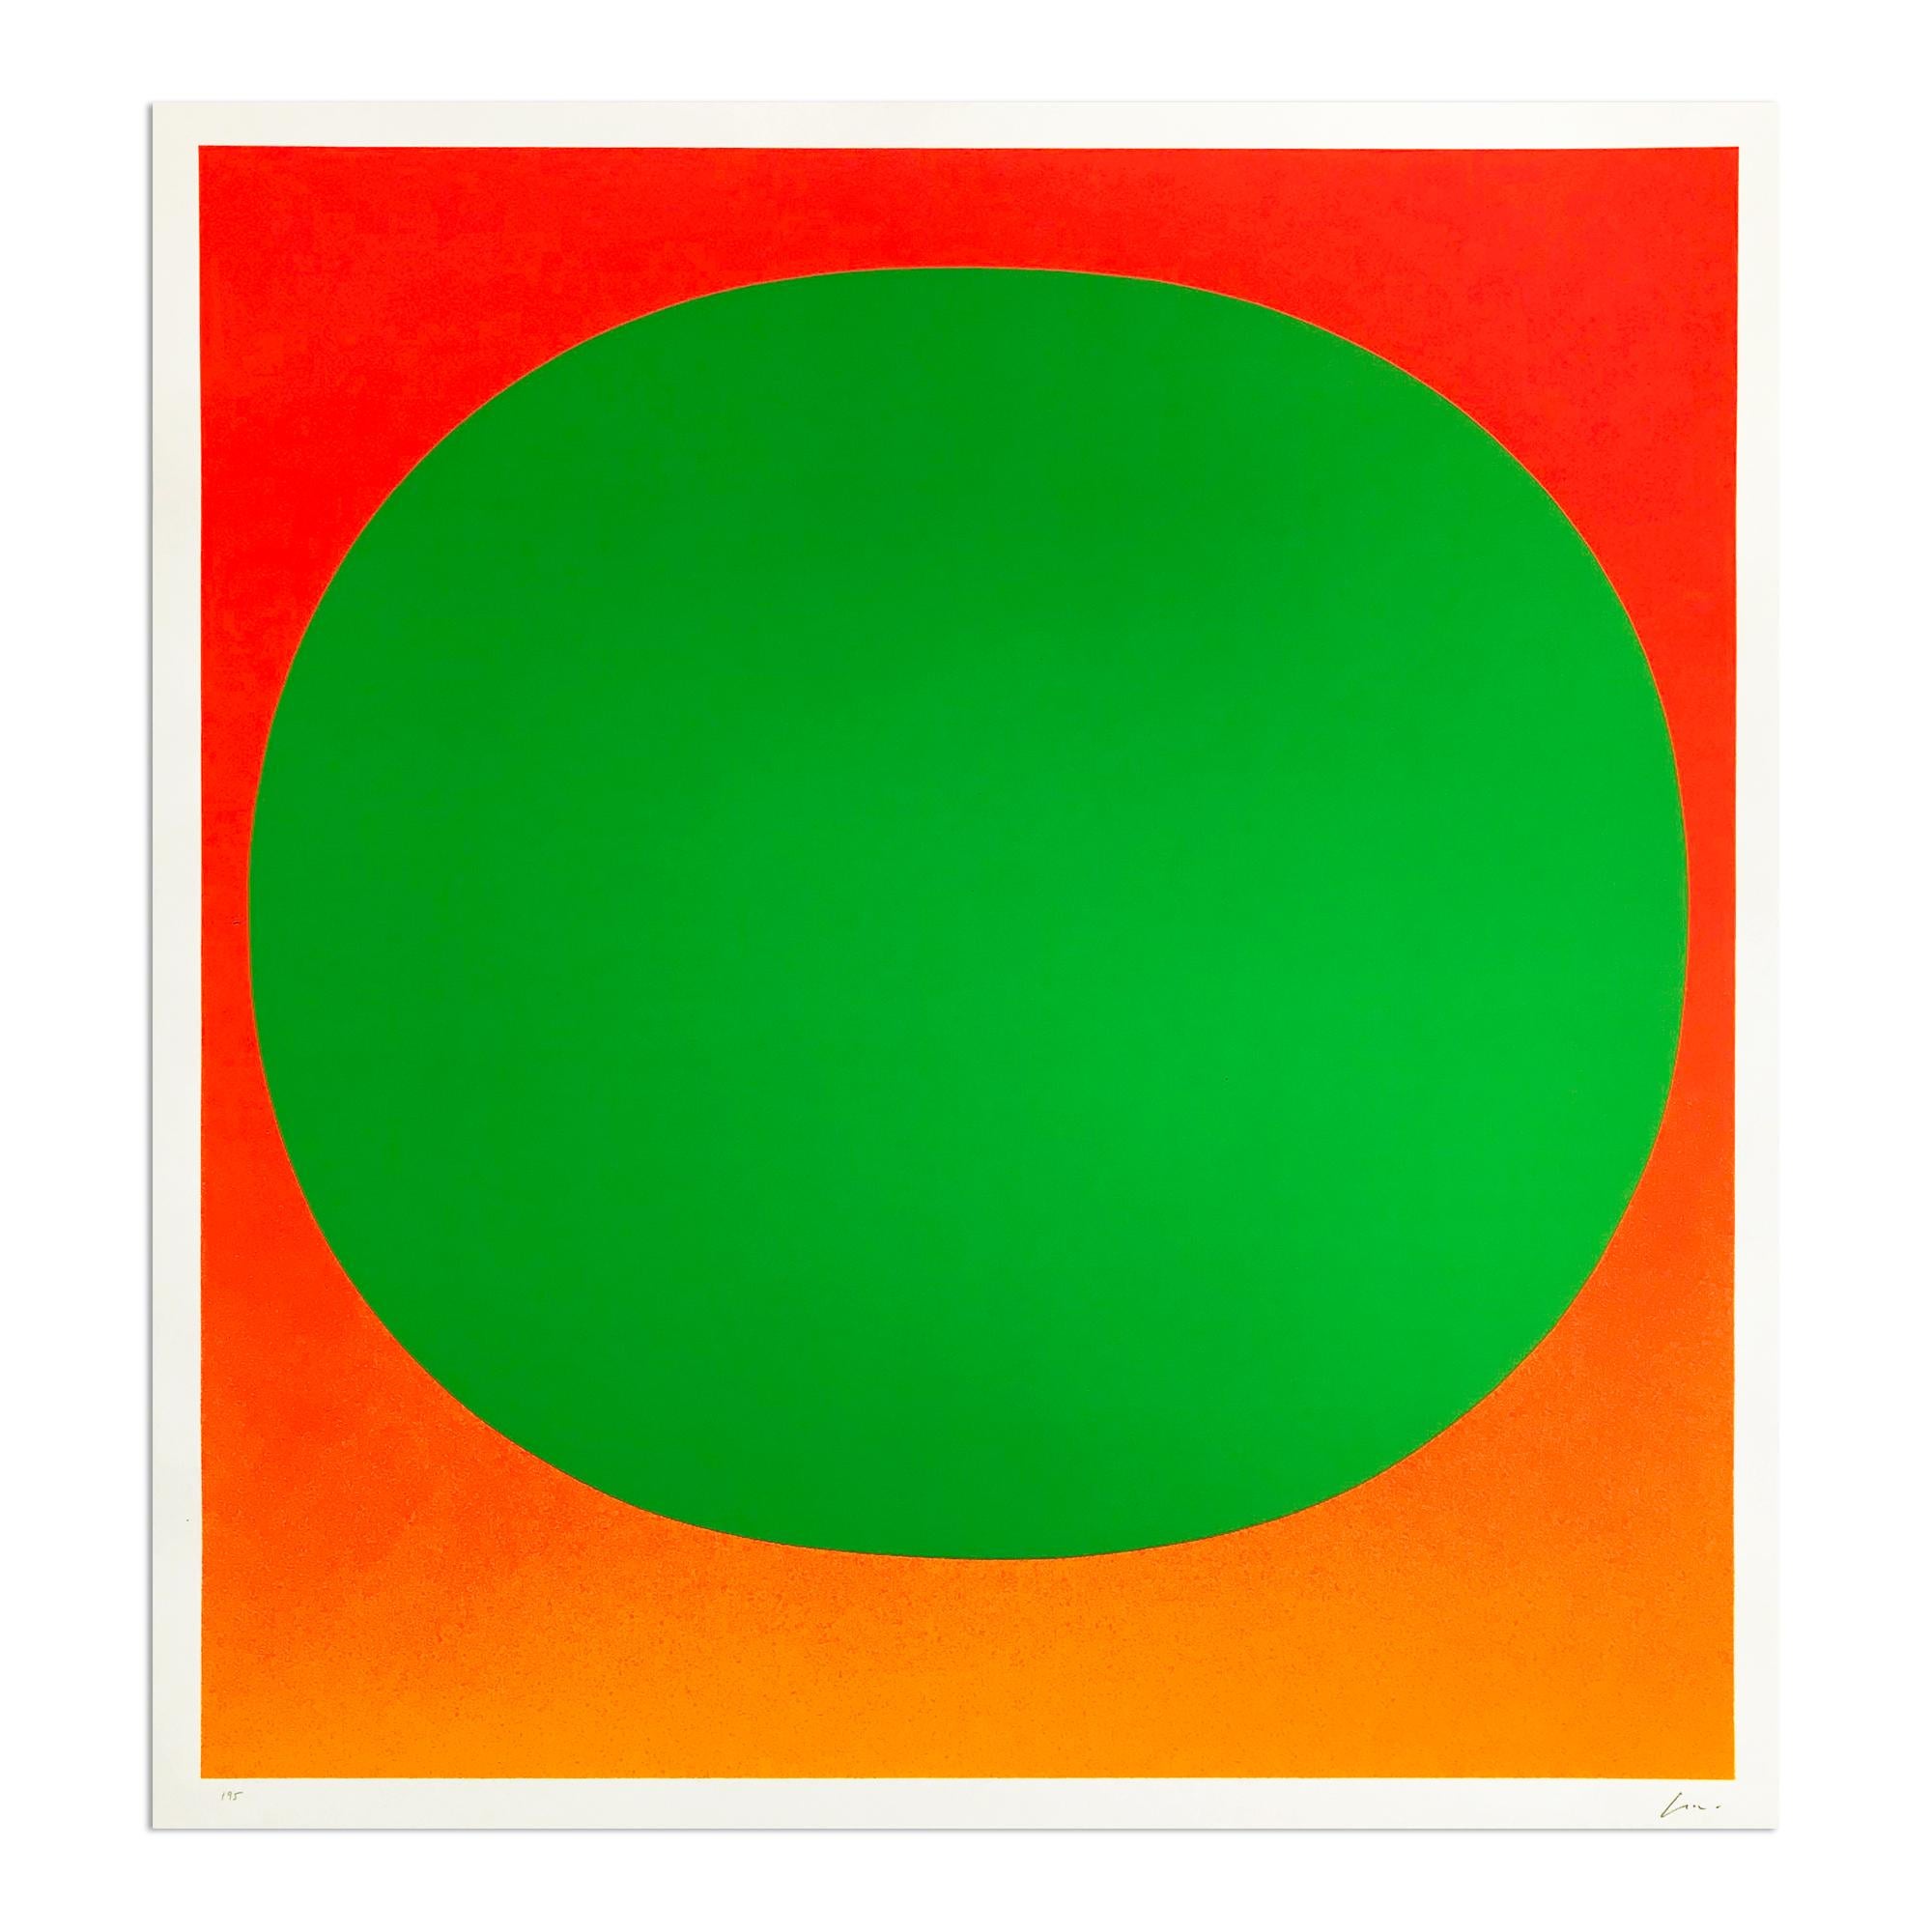 Rupprecht Geiger, Green on Orange, 1969, Screenprint, Abstract Art, Signed Print